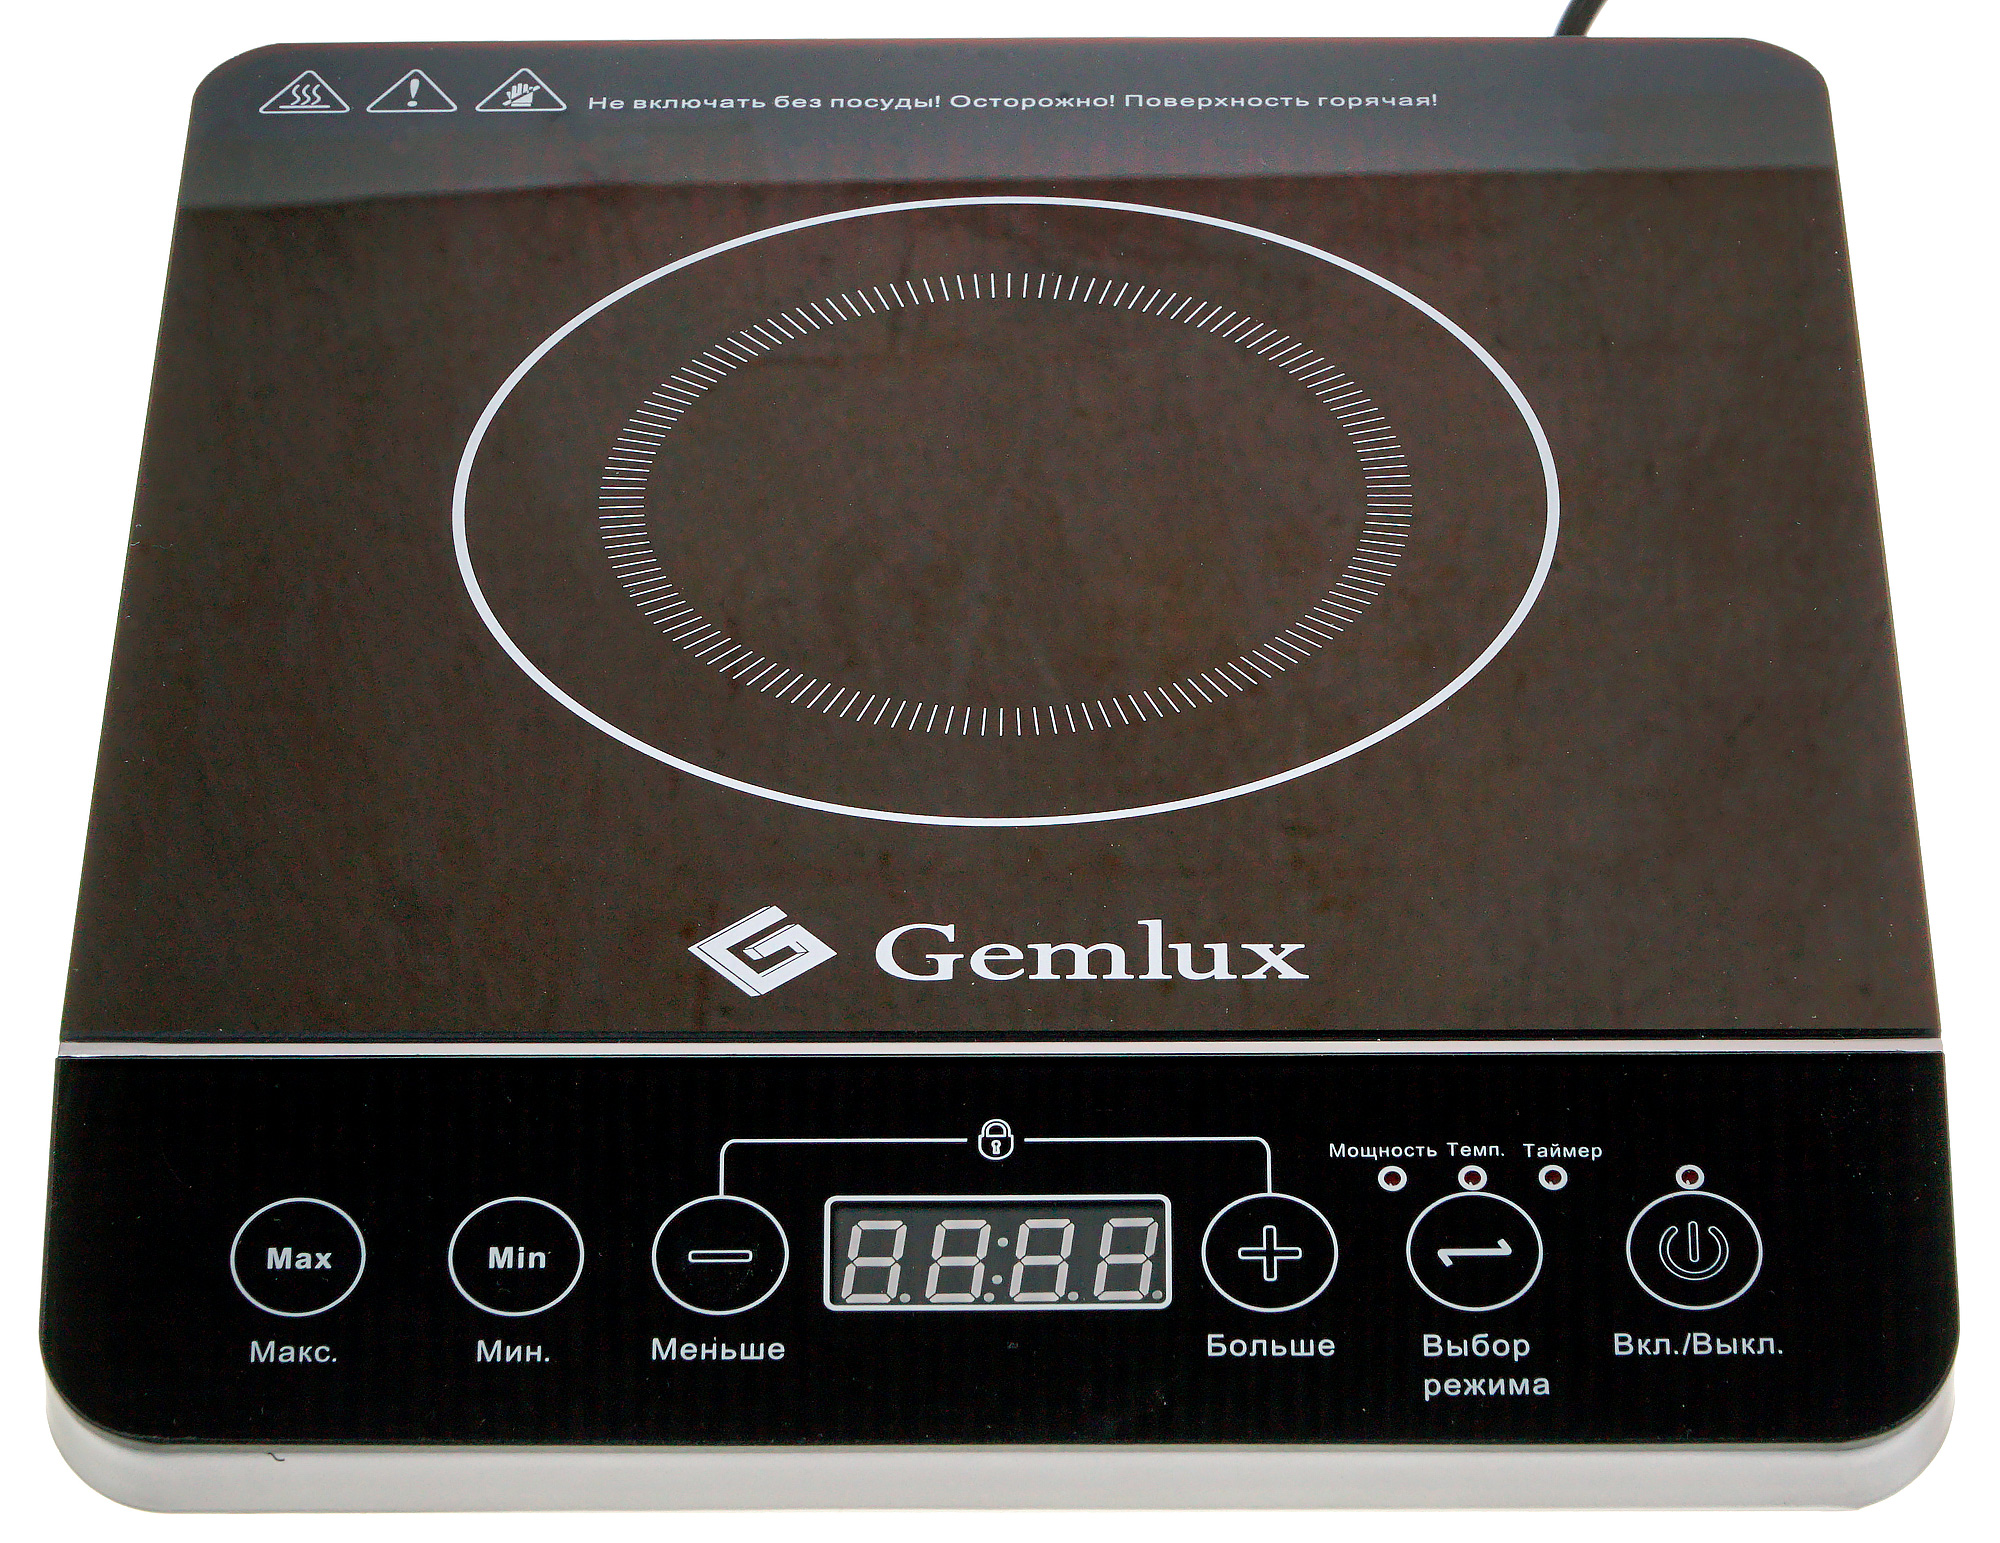 Купить индукционную одноконфорочную. Плитка индукционная Gemlux gl-ip20a. Электрическая плита Gemlux gl-ip20a. Электрическая плита Gemlux gl-ip20a, черный. Плитка индукционная одноконфорочная 3.5 КВТ.